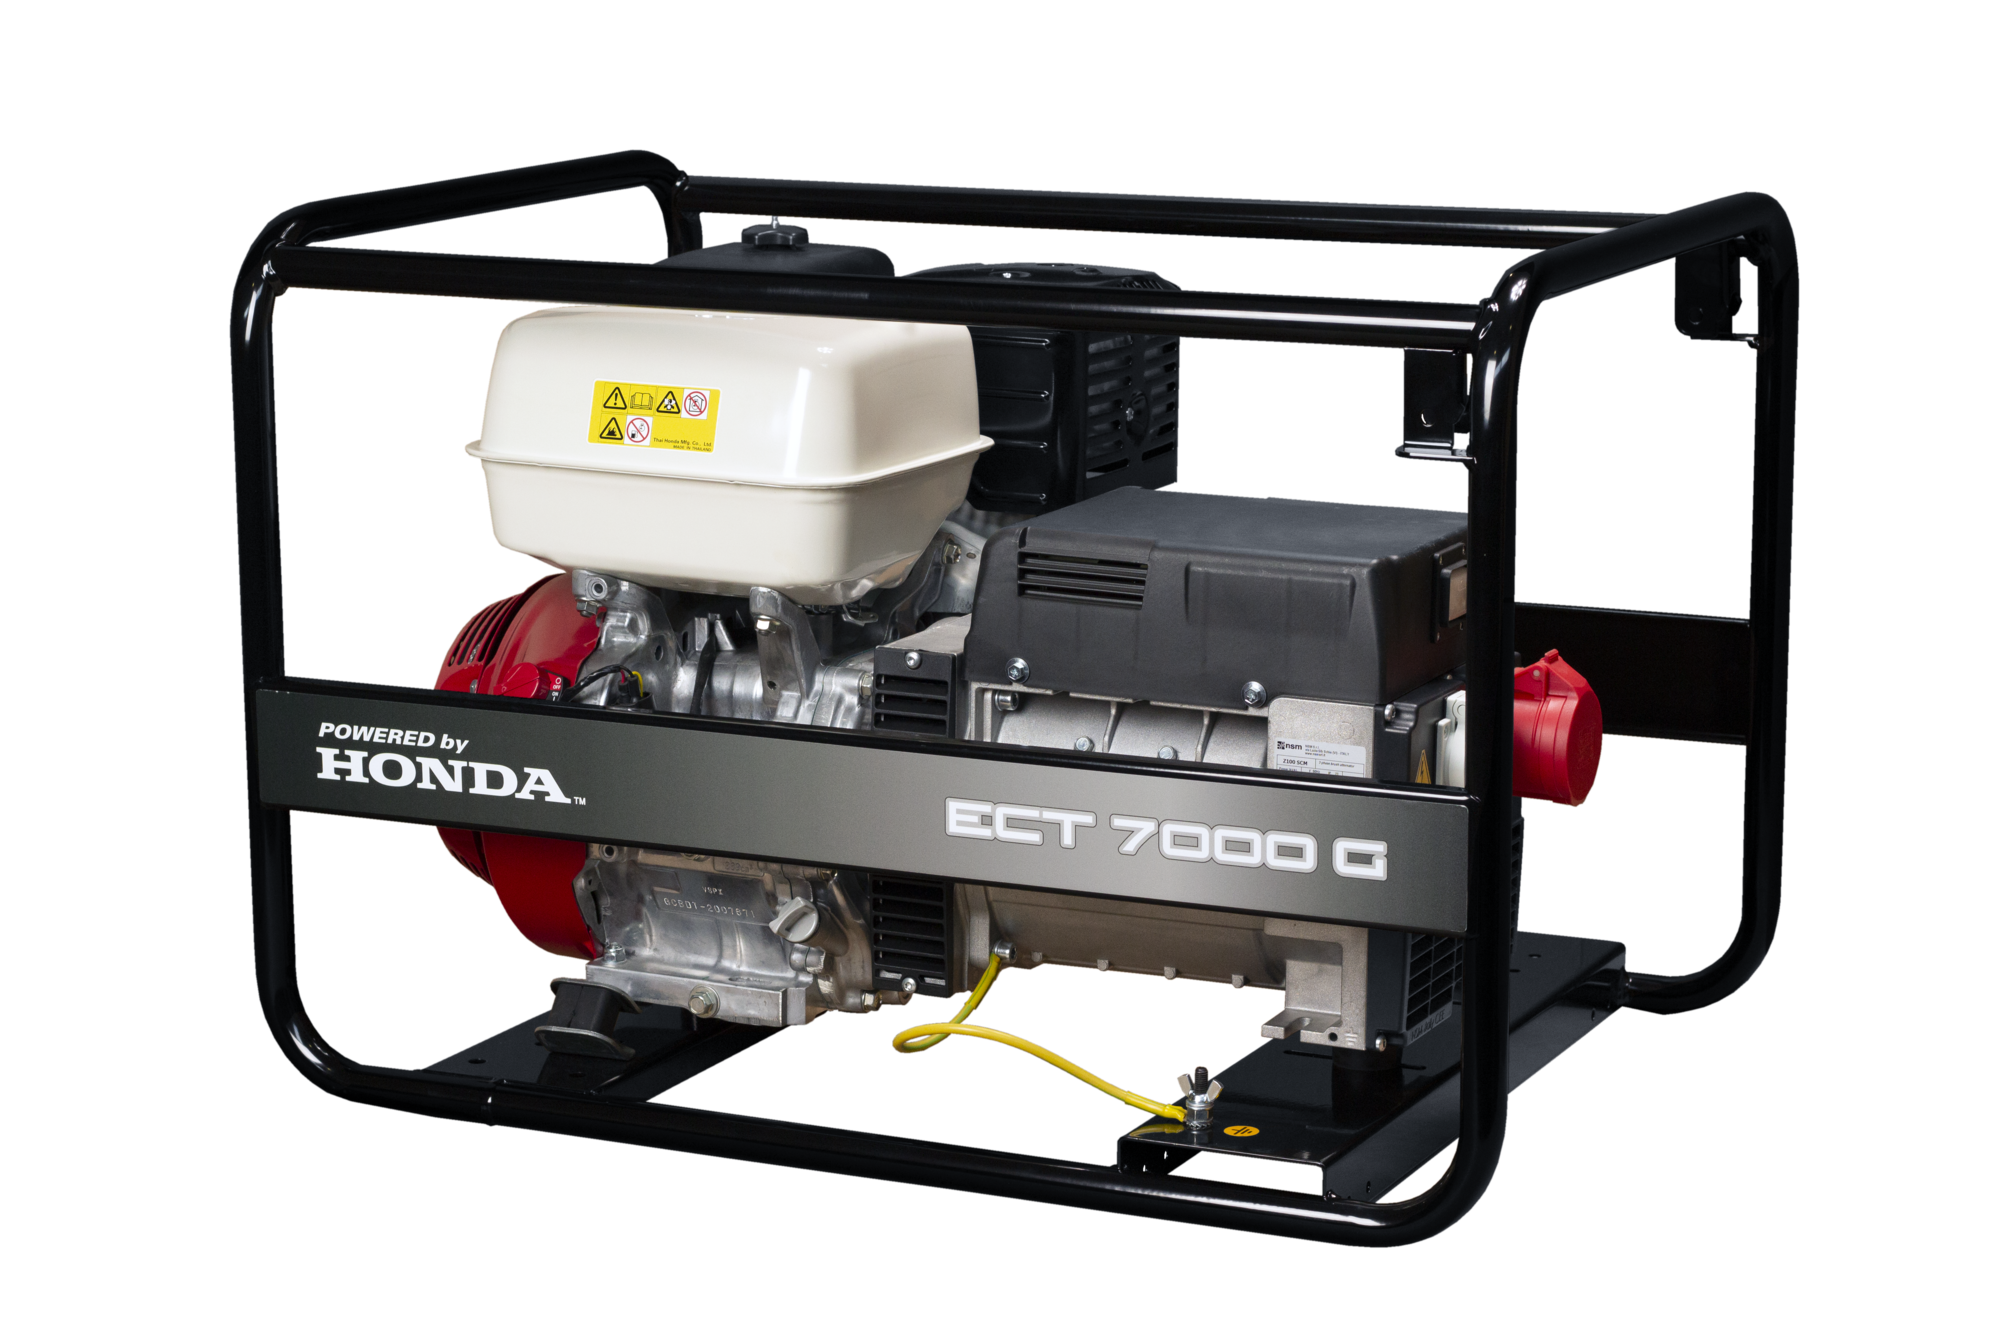 Rámová profesionální elektrocentrála Honda ECT 7000 G